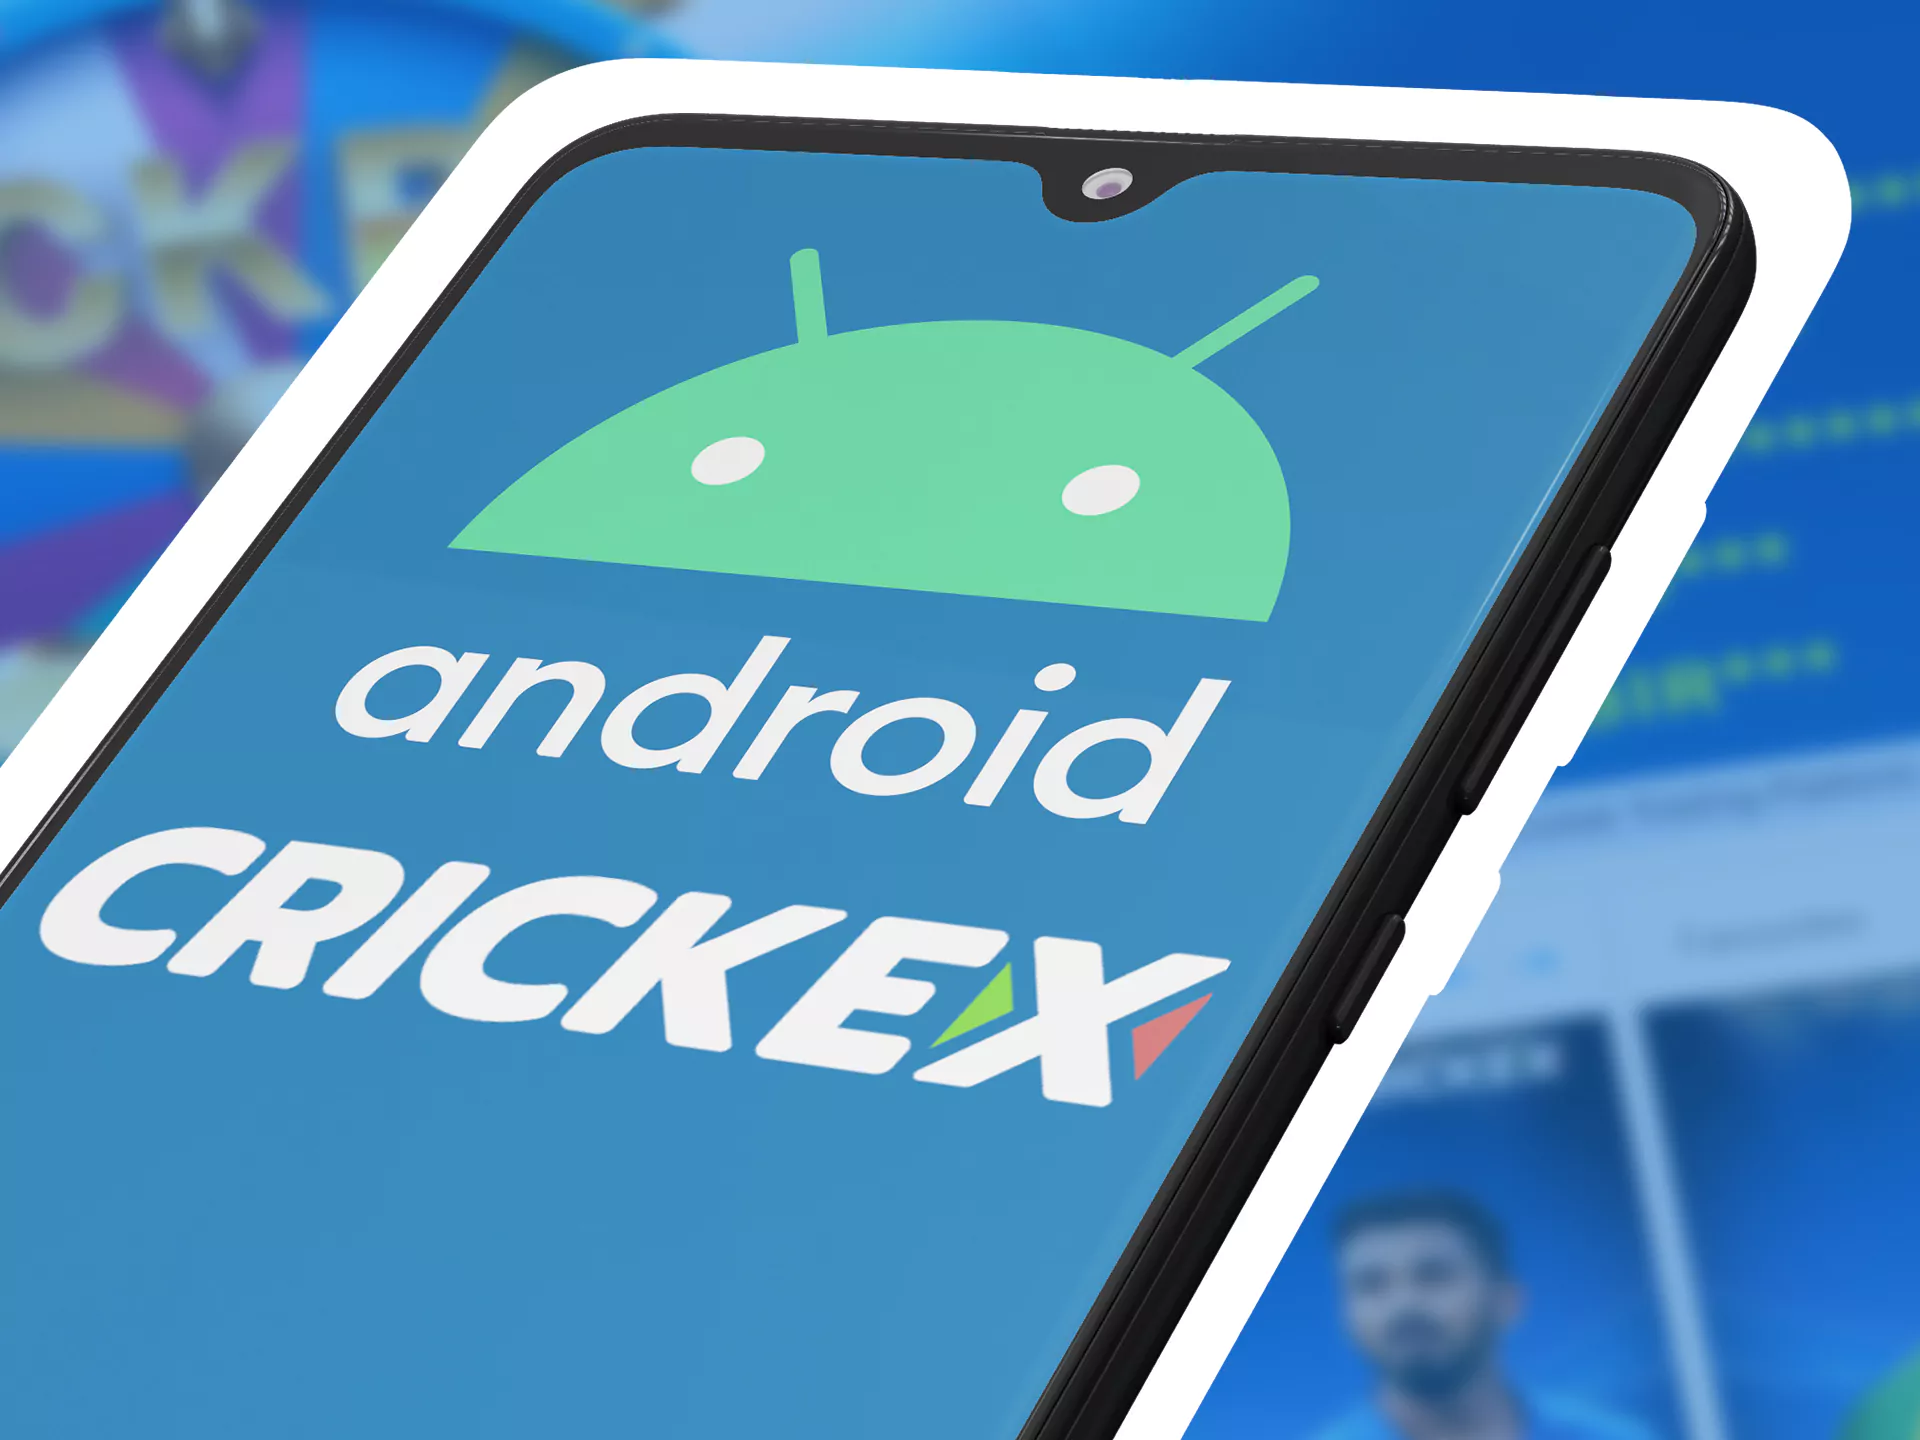 अपने Android डिवाइस पर Crickex ऐप डाउनलोड करें।